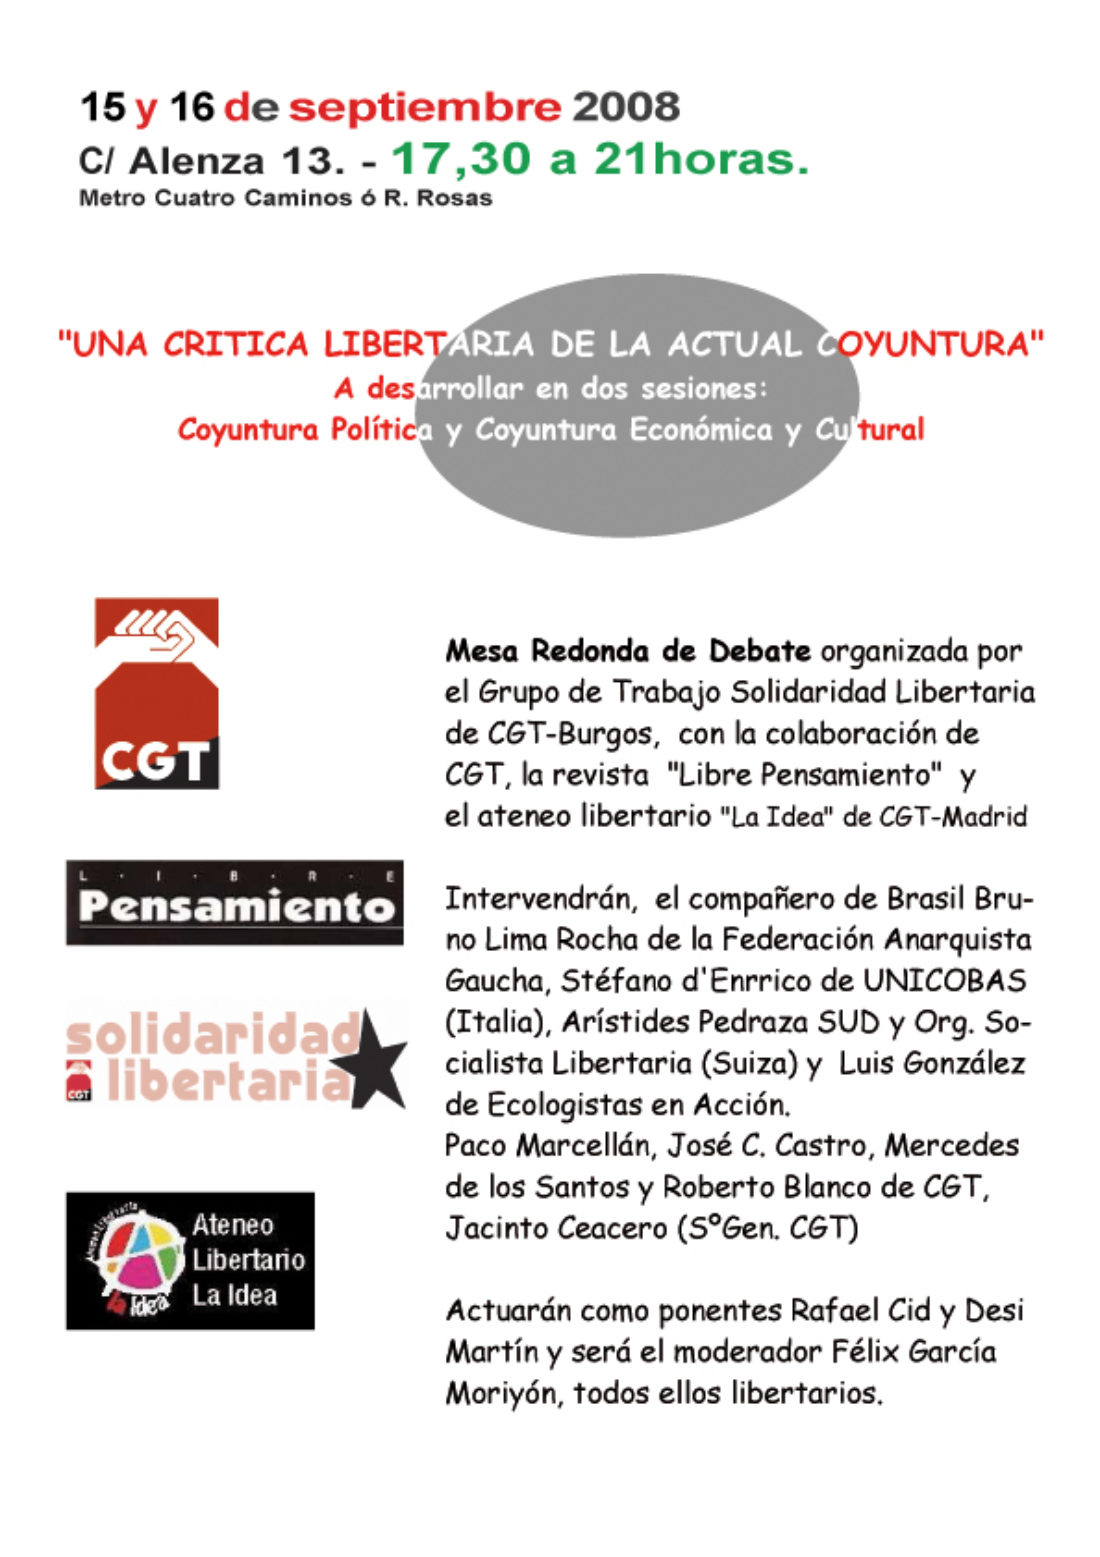 Madrid. Ateneo Libertario La Idea. 15 y 16 de septiembre 2008. «UNA CRITICA LIBERTARIA DE LA ACTUAL COYUNTURA»